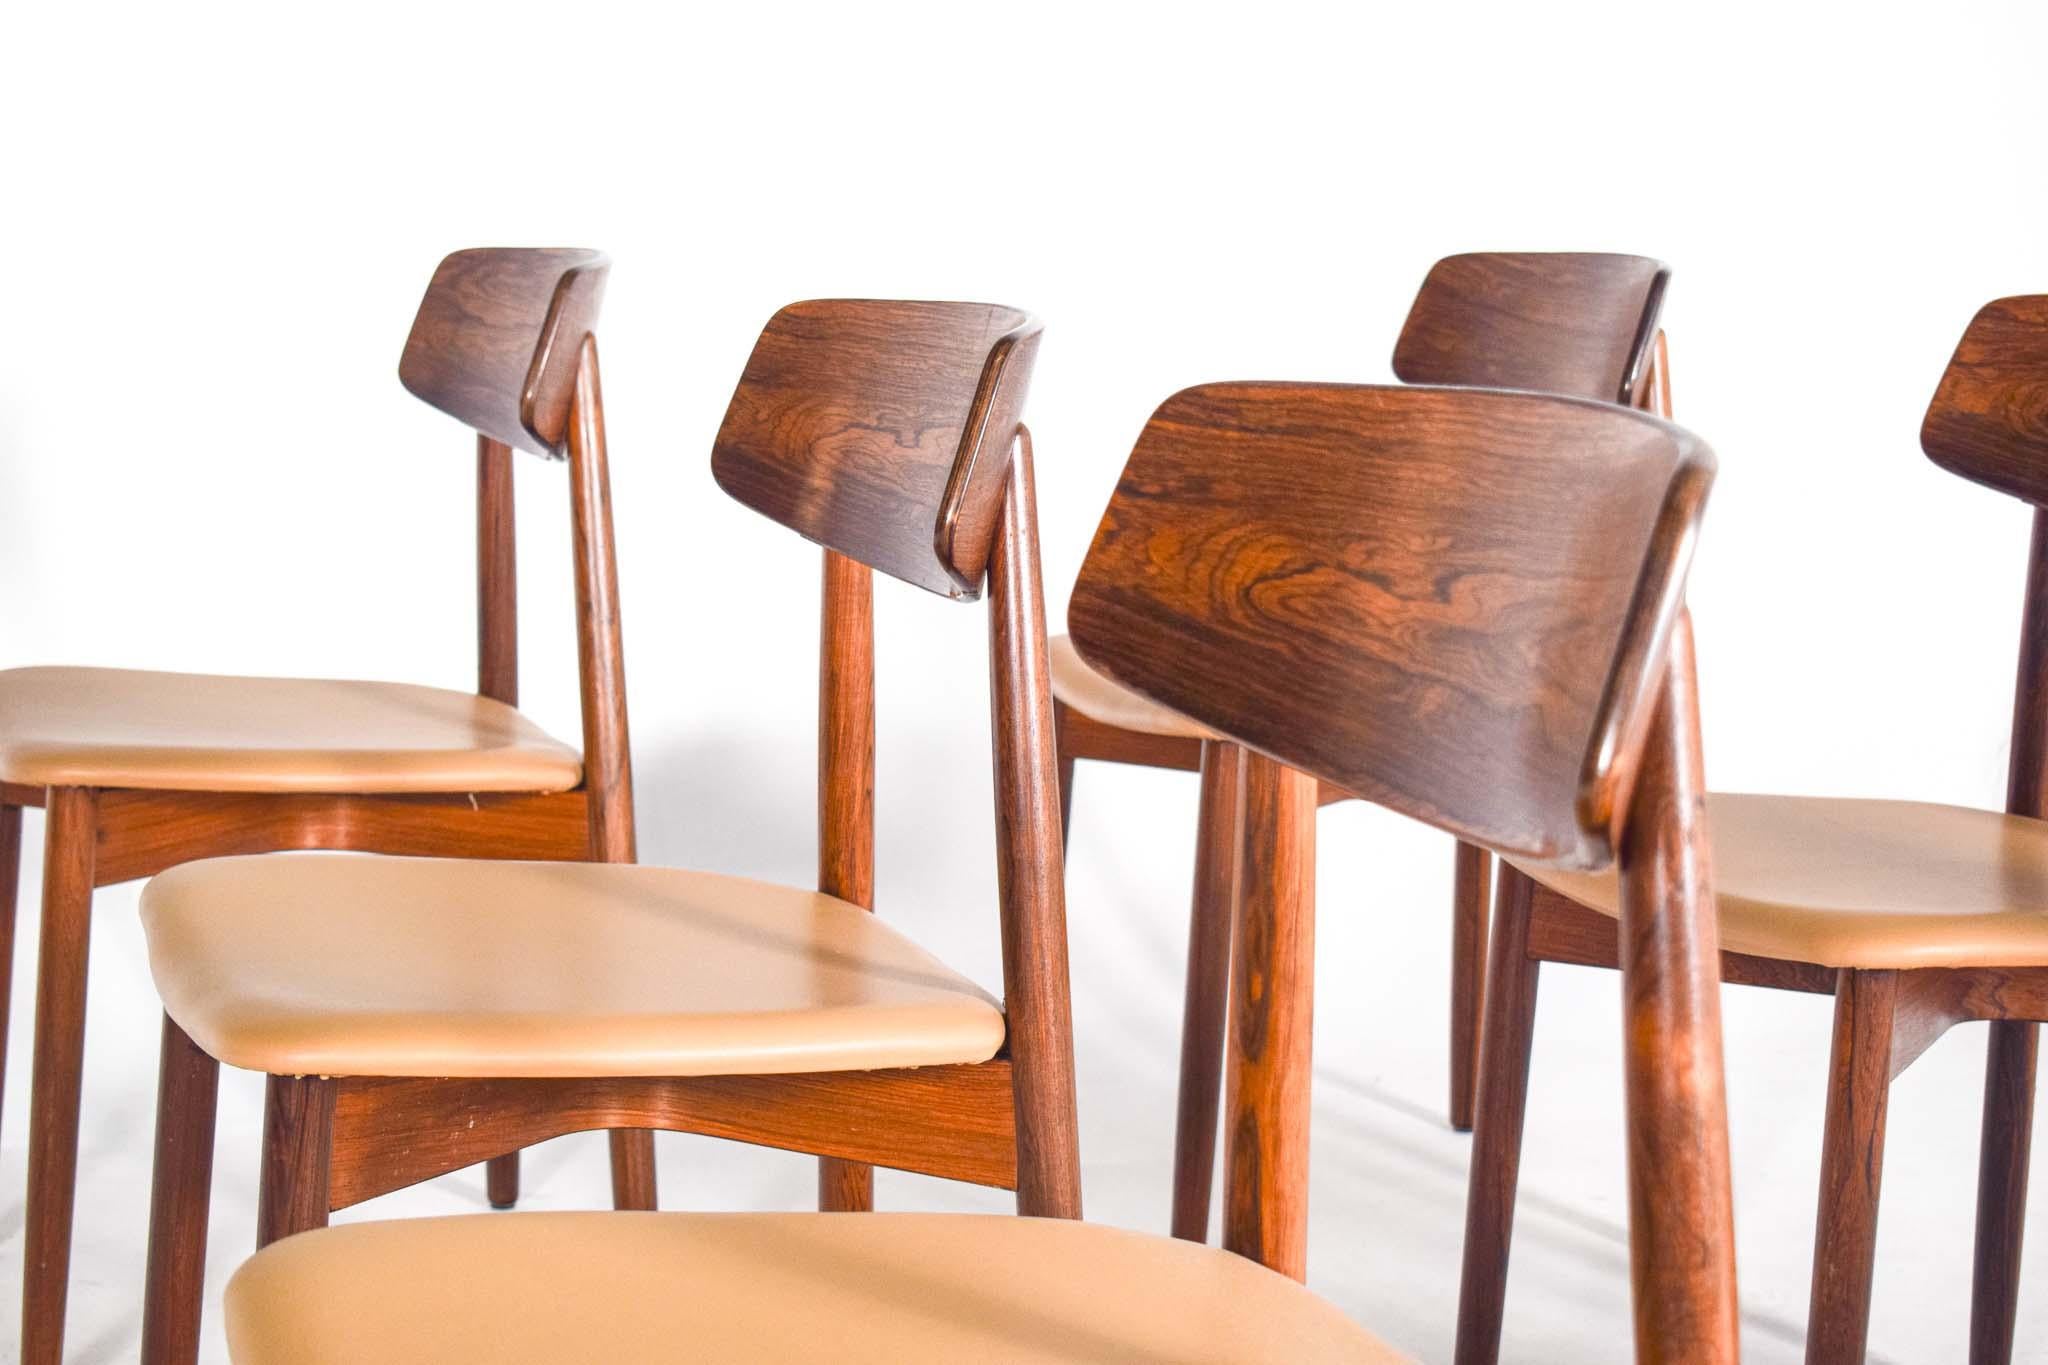 Satz von sechs Esszimmerstühlen, entworfen von Harry Østergaard für Randers Møbelfabrik, Dänemark 1960er Jahre. Sehr elegante Stühle mit geschwungenen Rückenlehnen in schönem Palisanderfurnier. Der Sitz ruht auf einem zierlichen X-förmigen Sockel